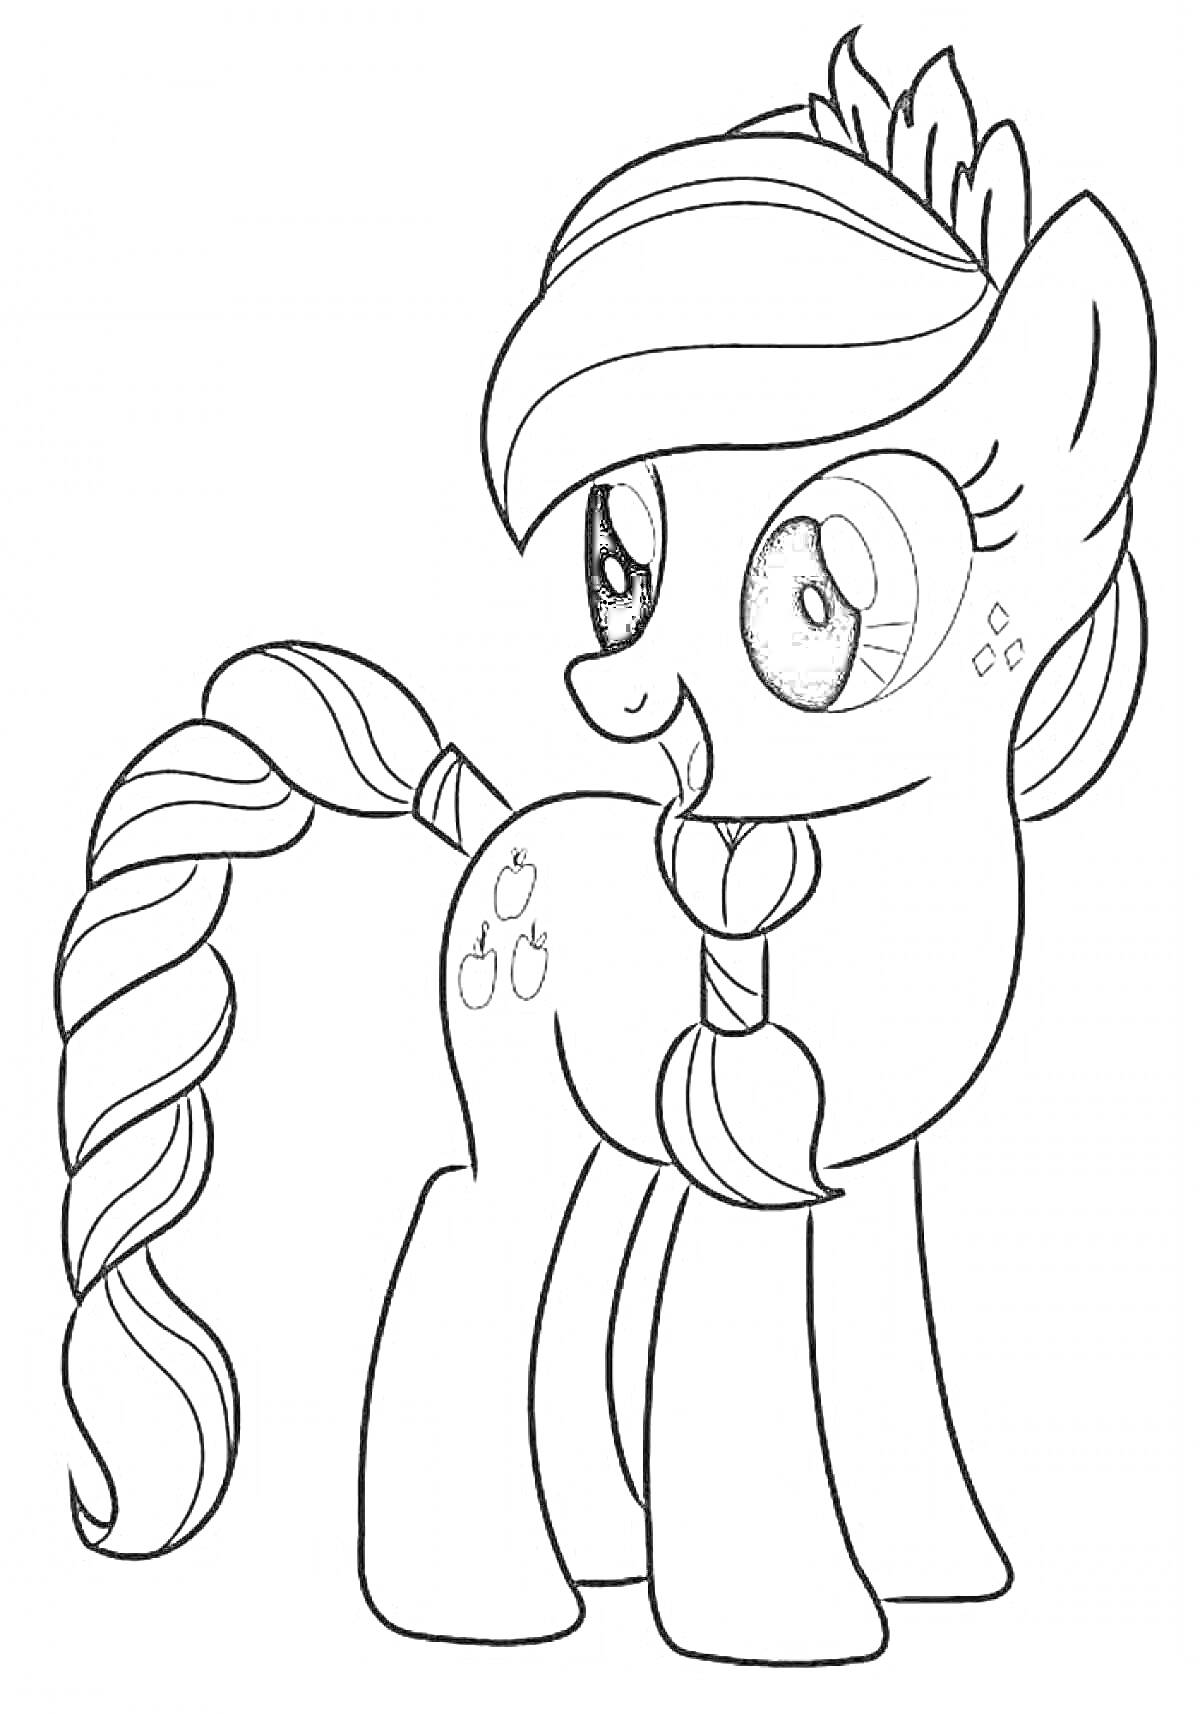 Раскраска Пони с длинной закрученной гривой и хвостом, с тремя яблоками на боку, улыбающаяся